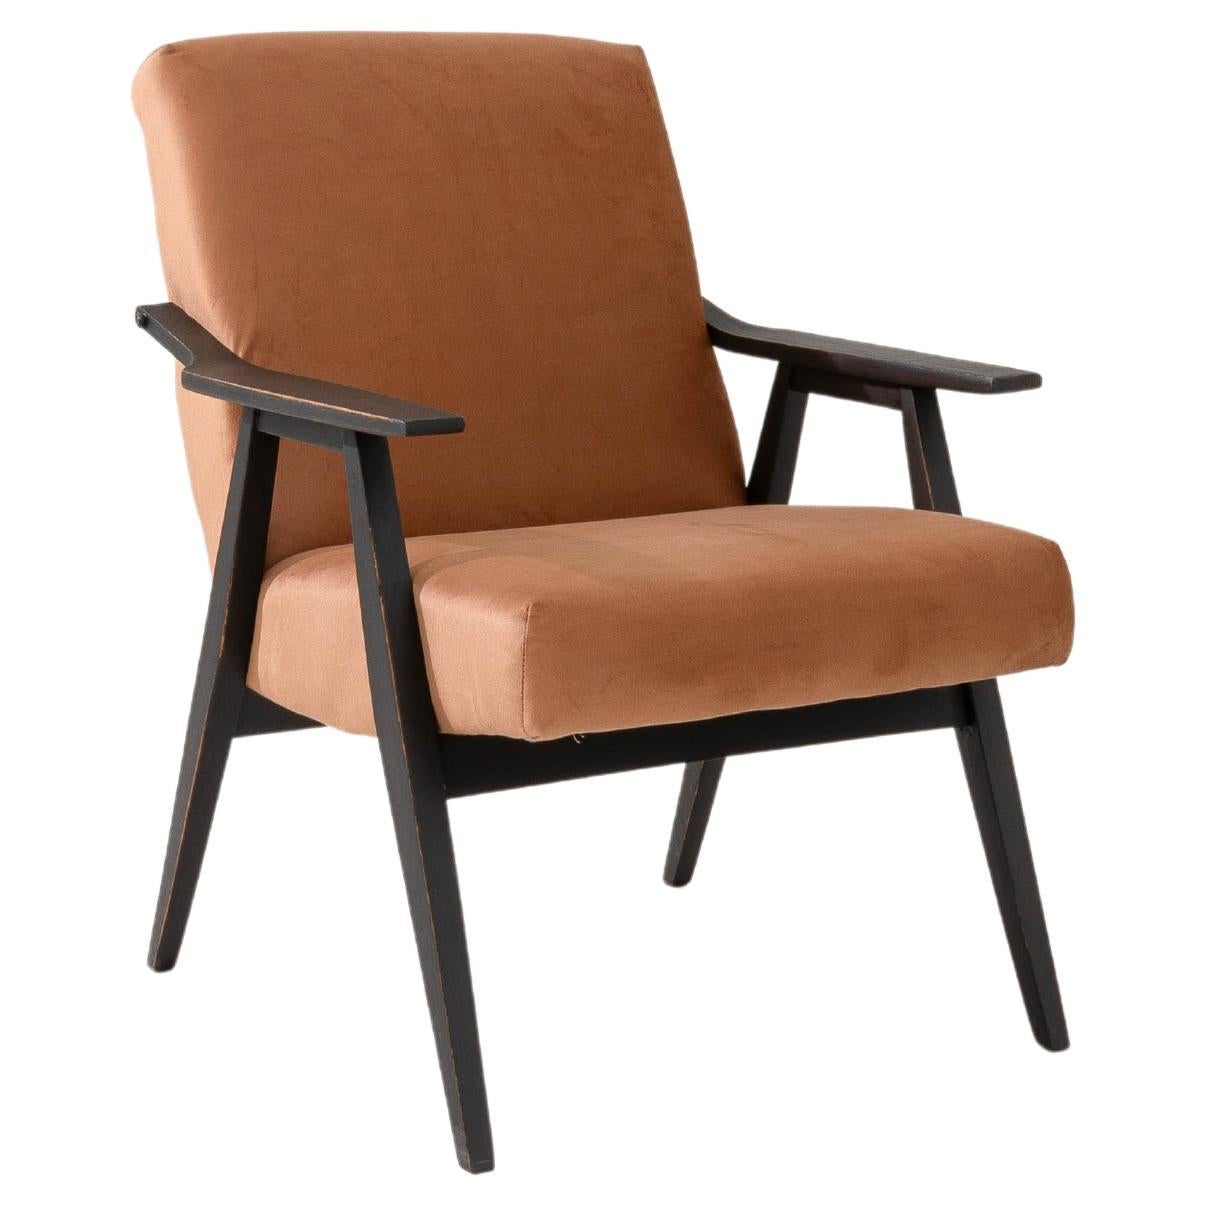 1960s Czech Upholstered Armchair